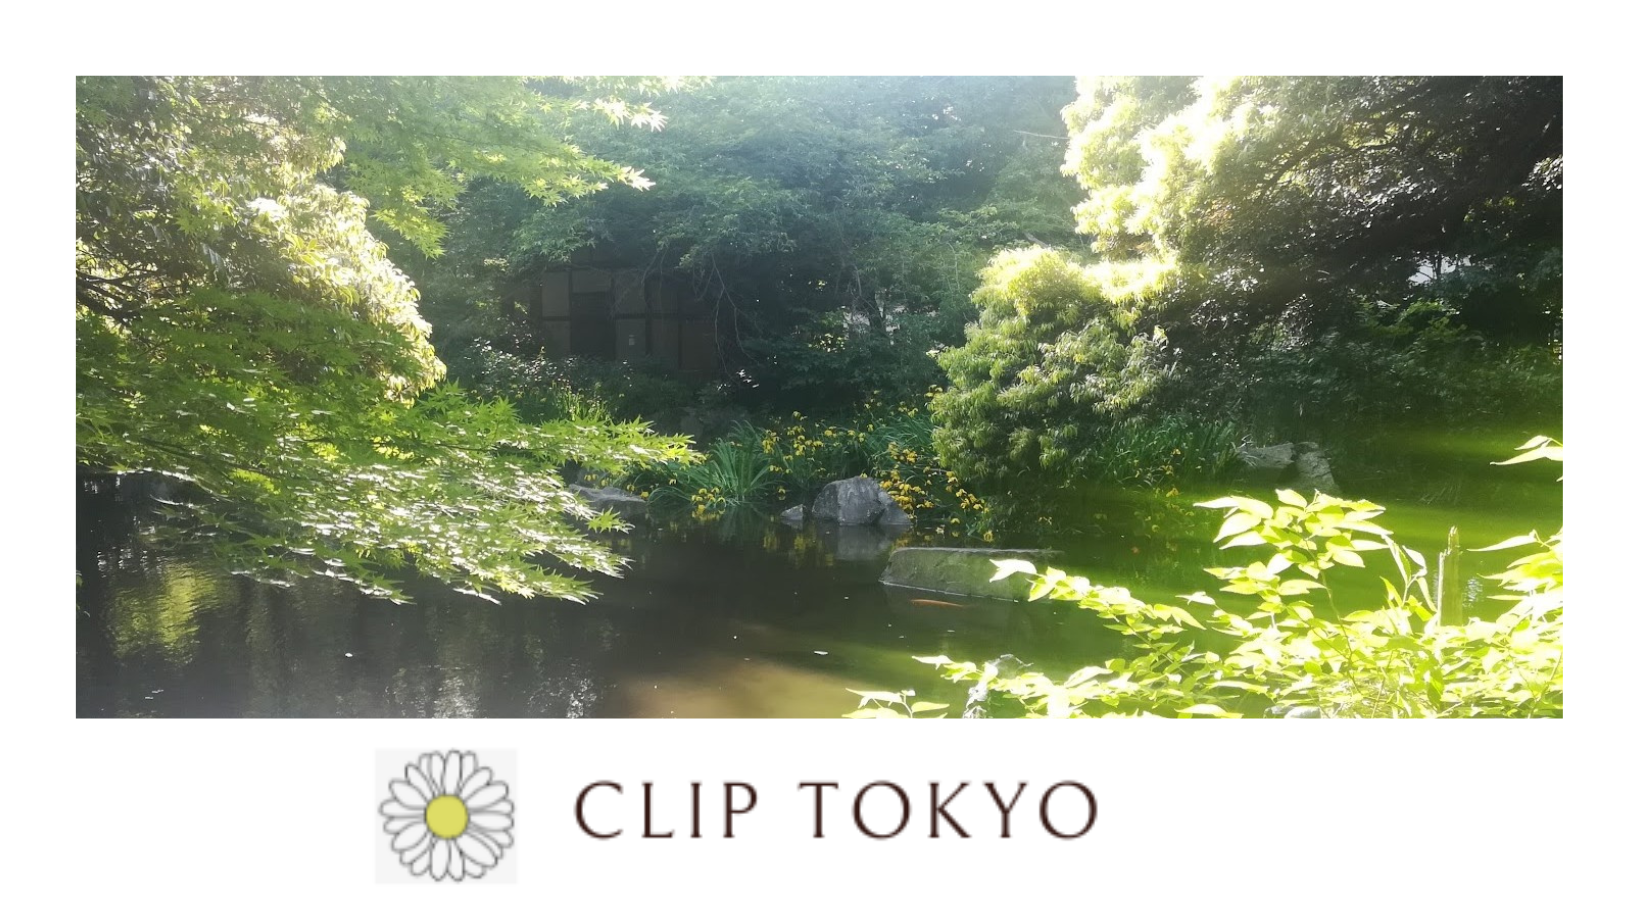 クリップ東京というブログのリンク付きカードです。ぜひご覧ください。